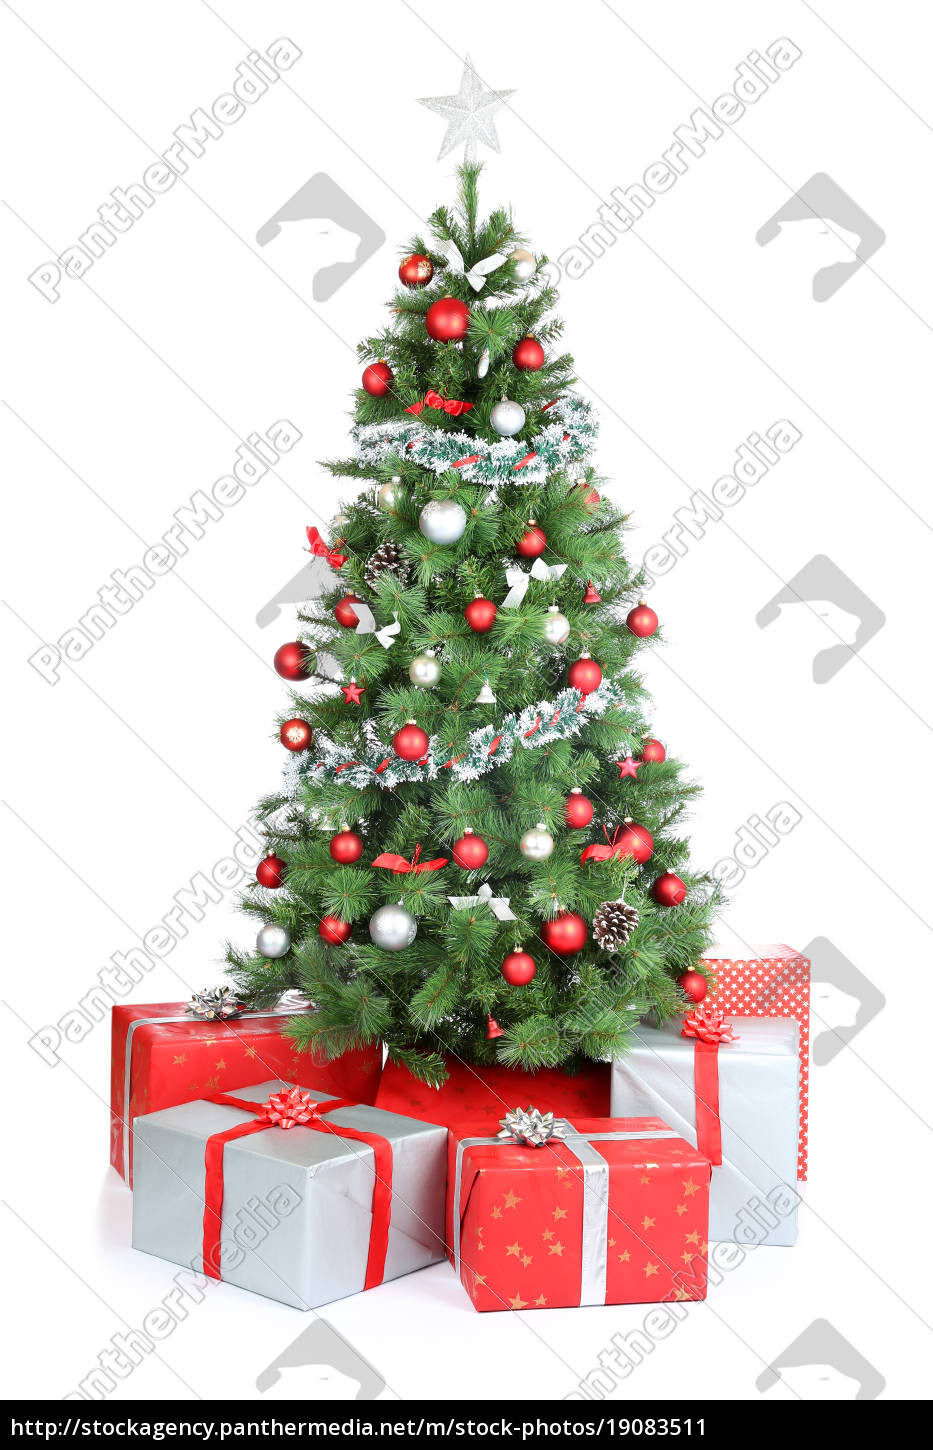 Weihnachtsbaum Geschenke
 Weihnachtsbaum Weihnachtsgeschenke Geschenke